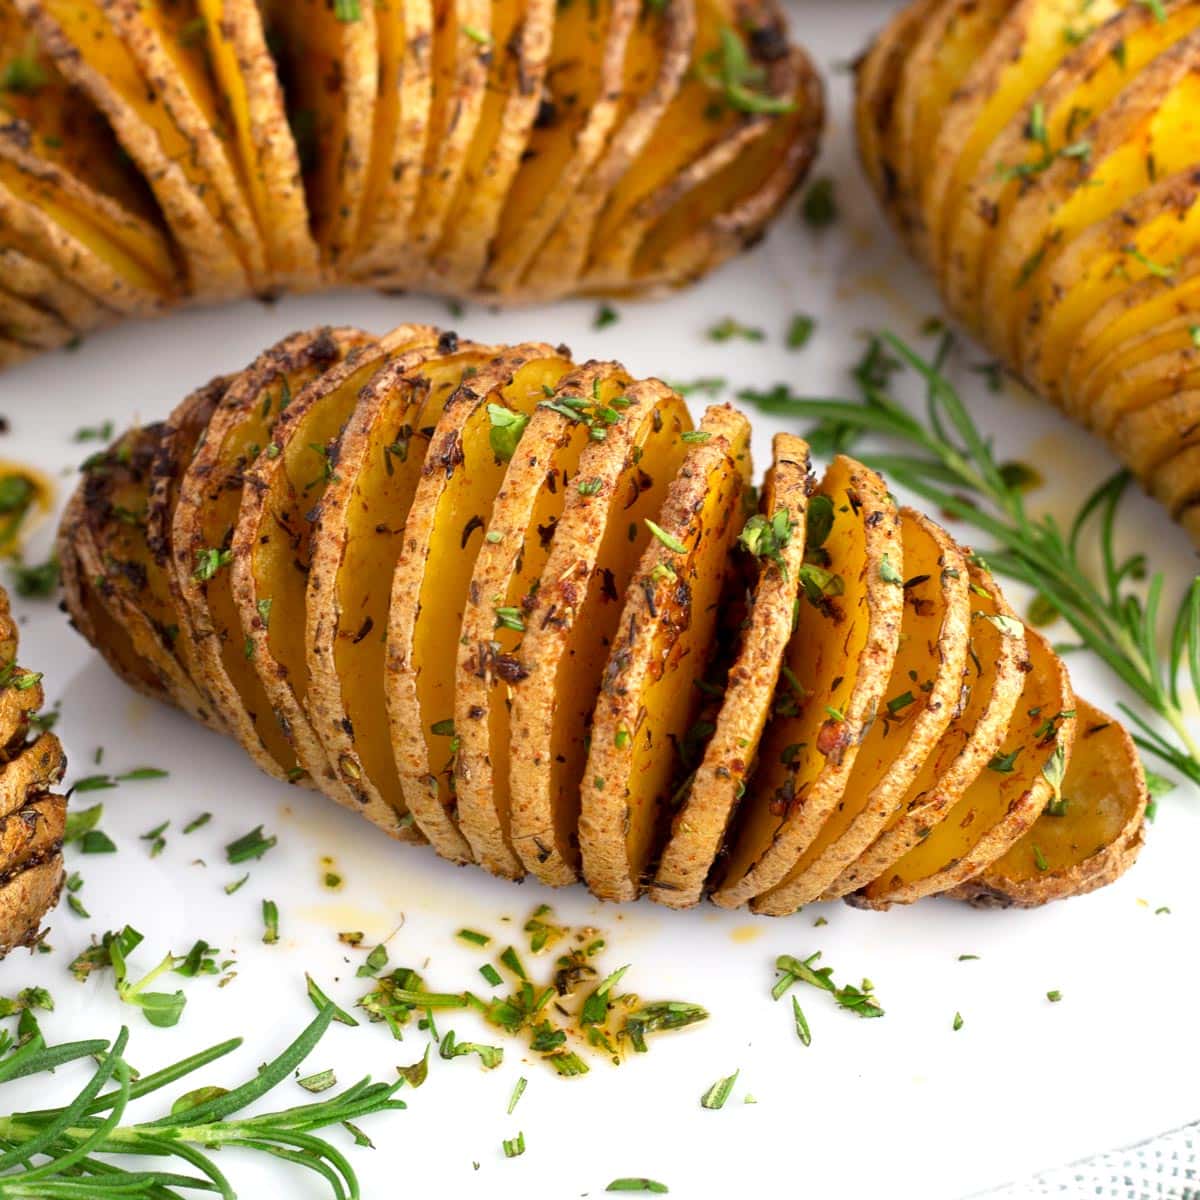 Crispy sliced baked potatoes on platter with fresh herbs.